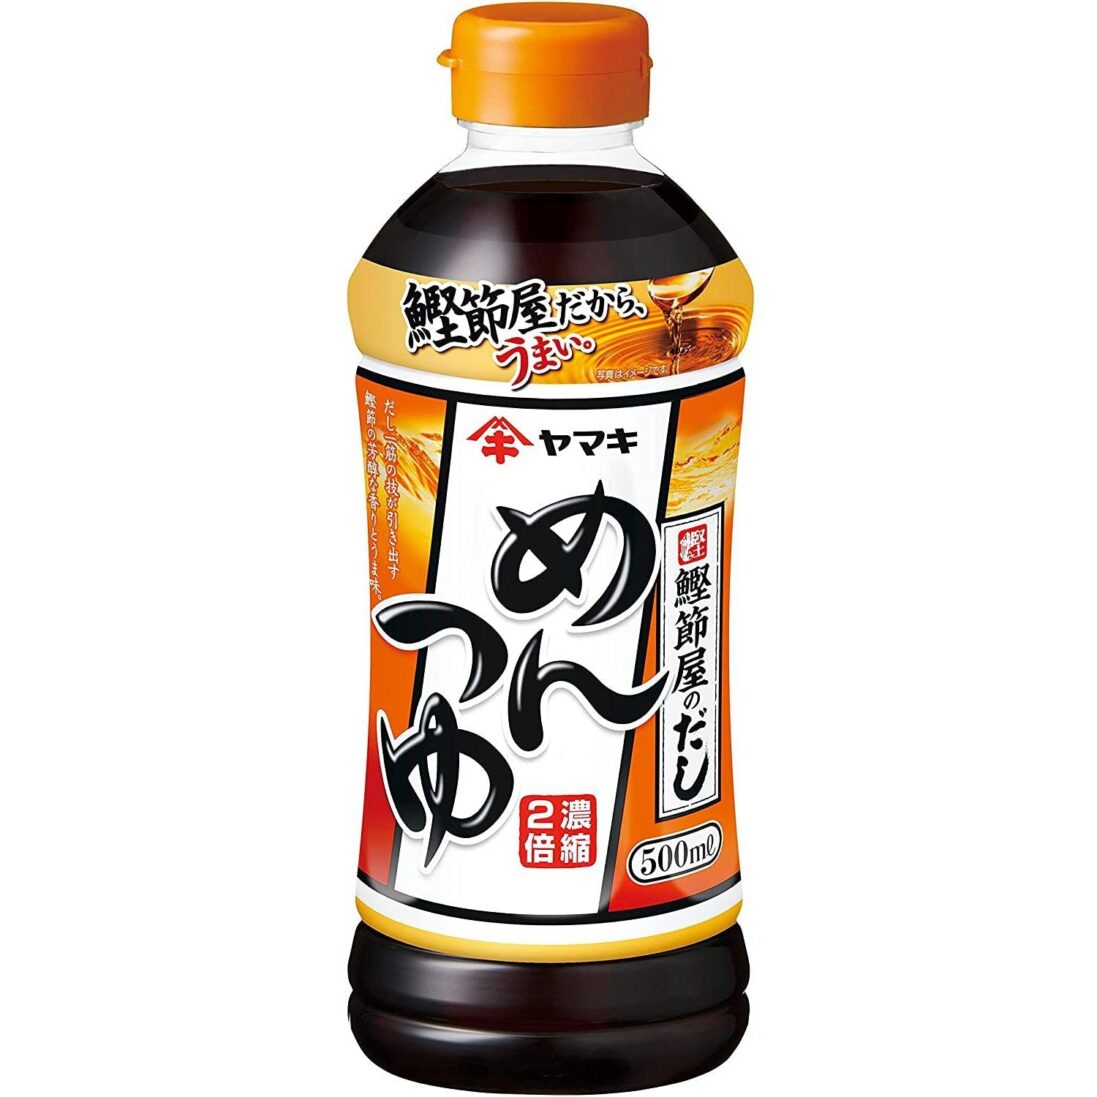 Yamaki-Mentsuyu-Sauce-Soup-Base-500ml-Japanese-Taste_2048x.jpg